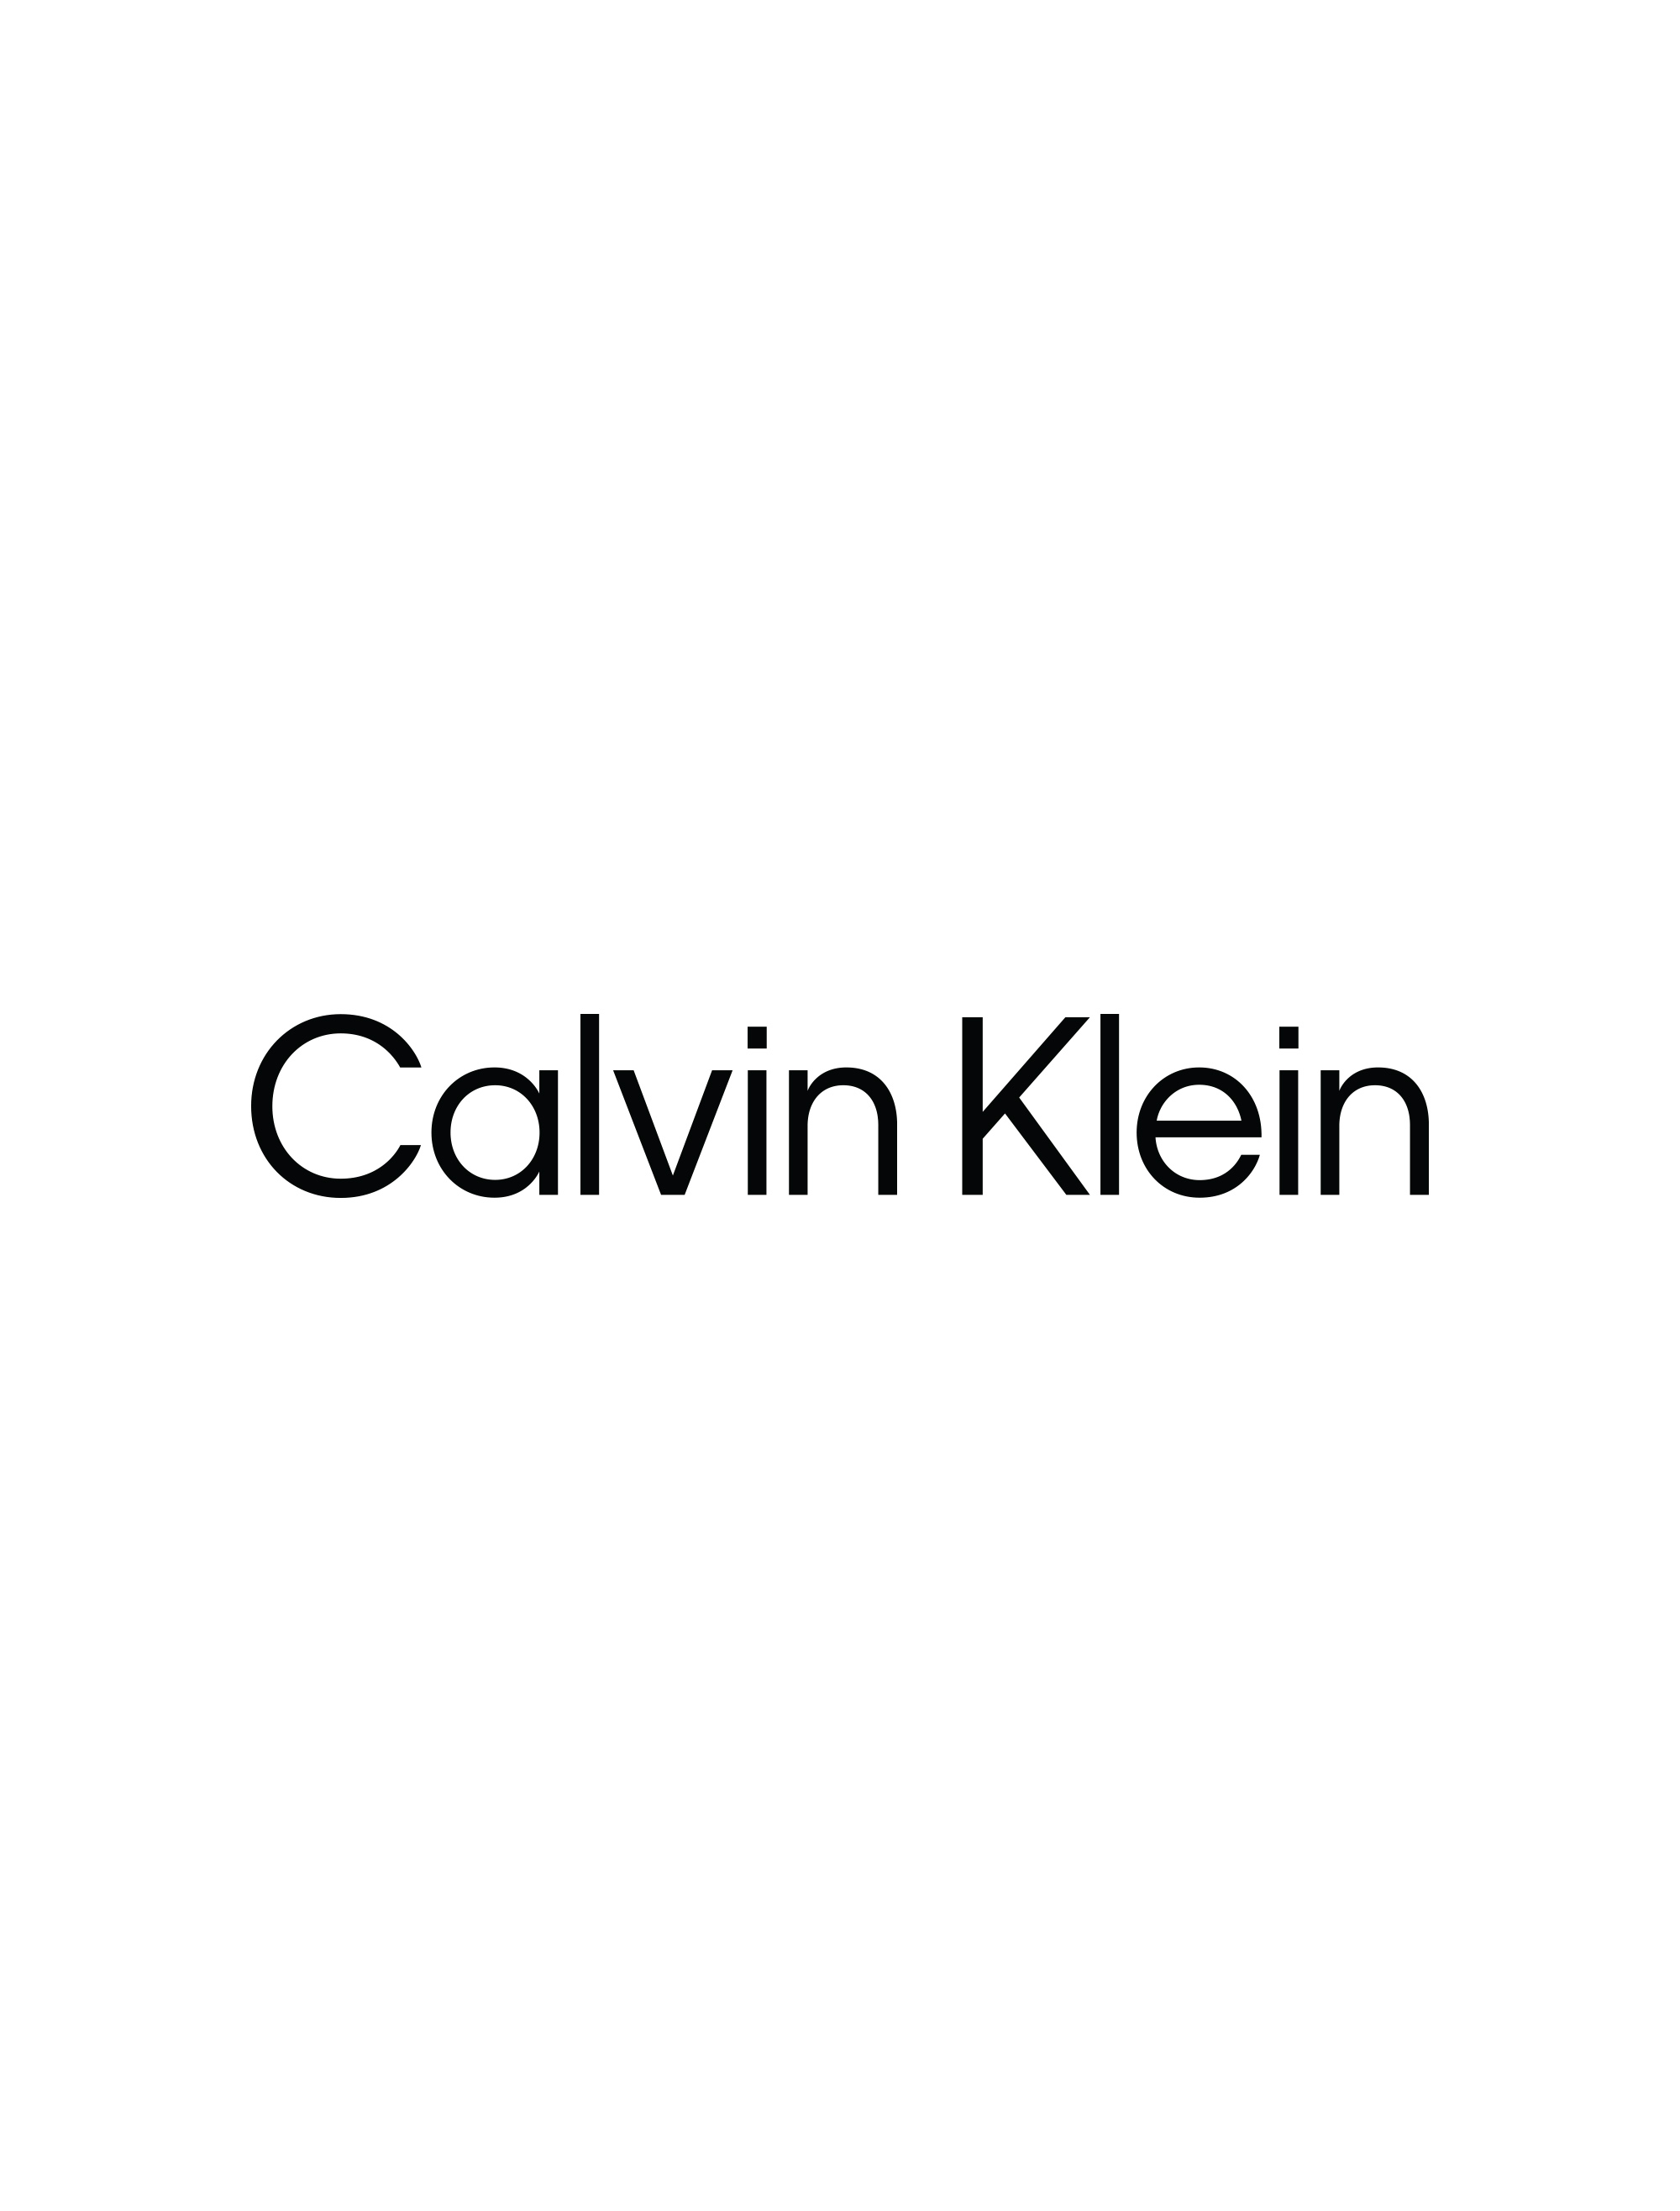 Underwear - Buy Underwear Online Australia | Calvin Klein